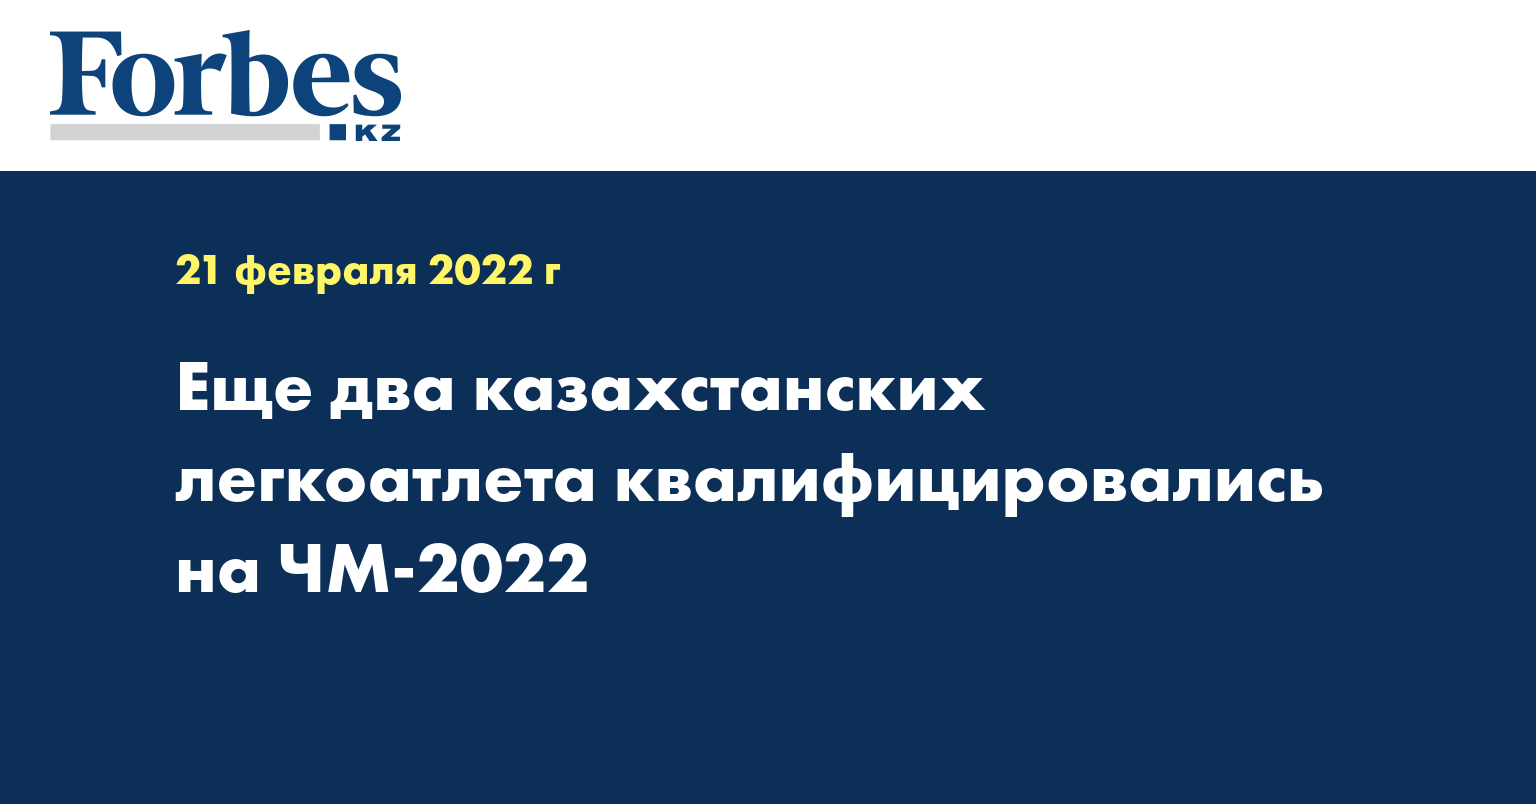 Еще два казахстанских легкоатлета квалифицировались на ЧМ-2022